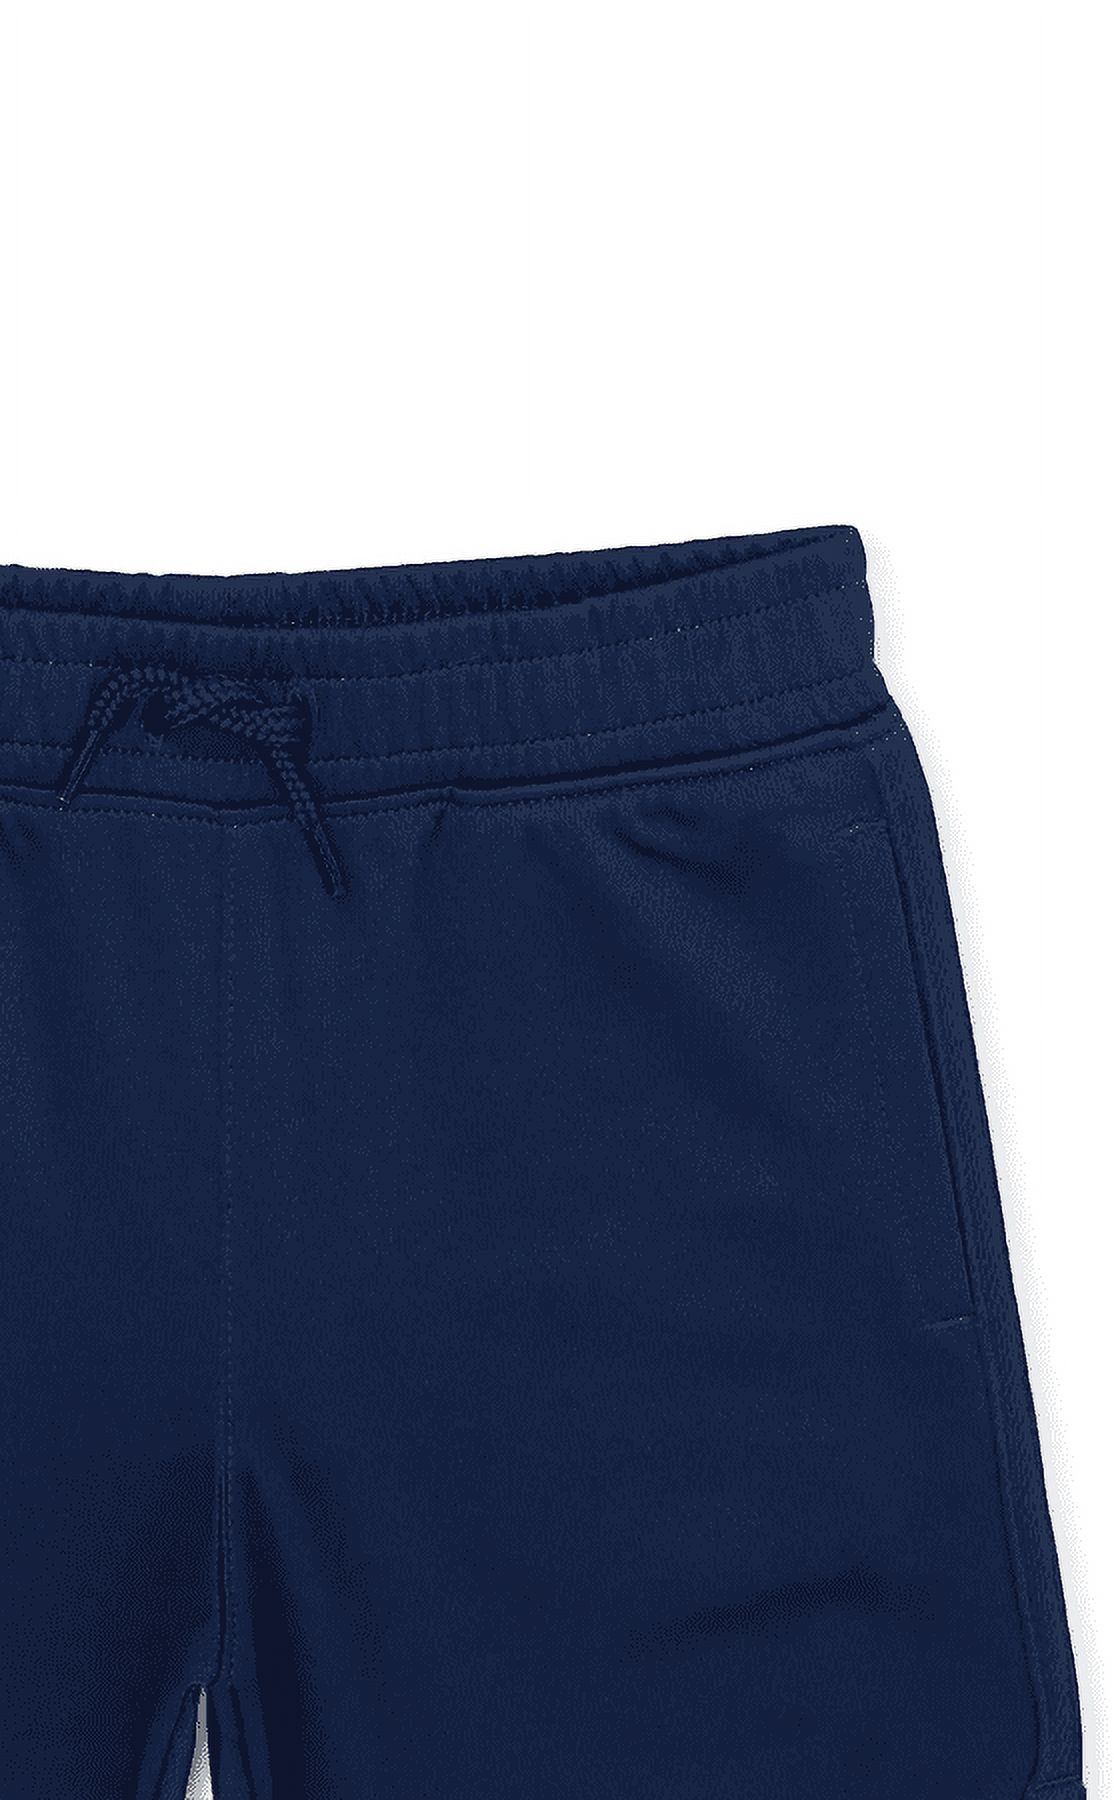 Garanimals Toddler Boys Mesh Shorts, Sizes 12M-5T - image 2 of 4